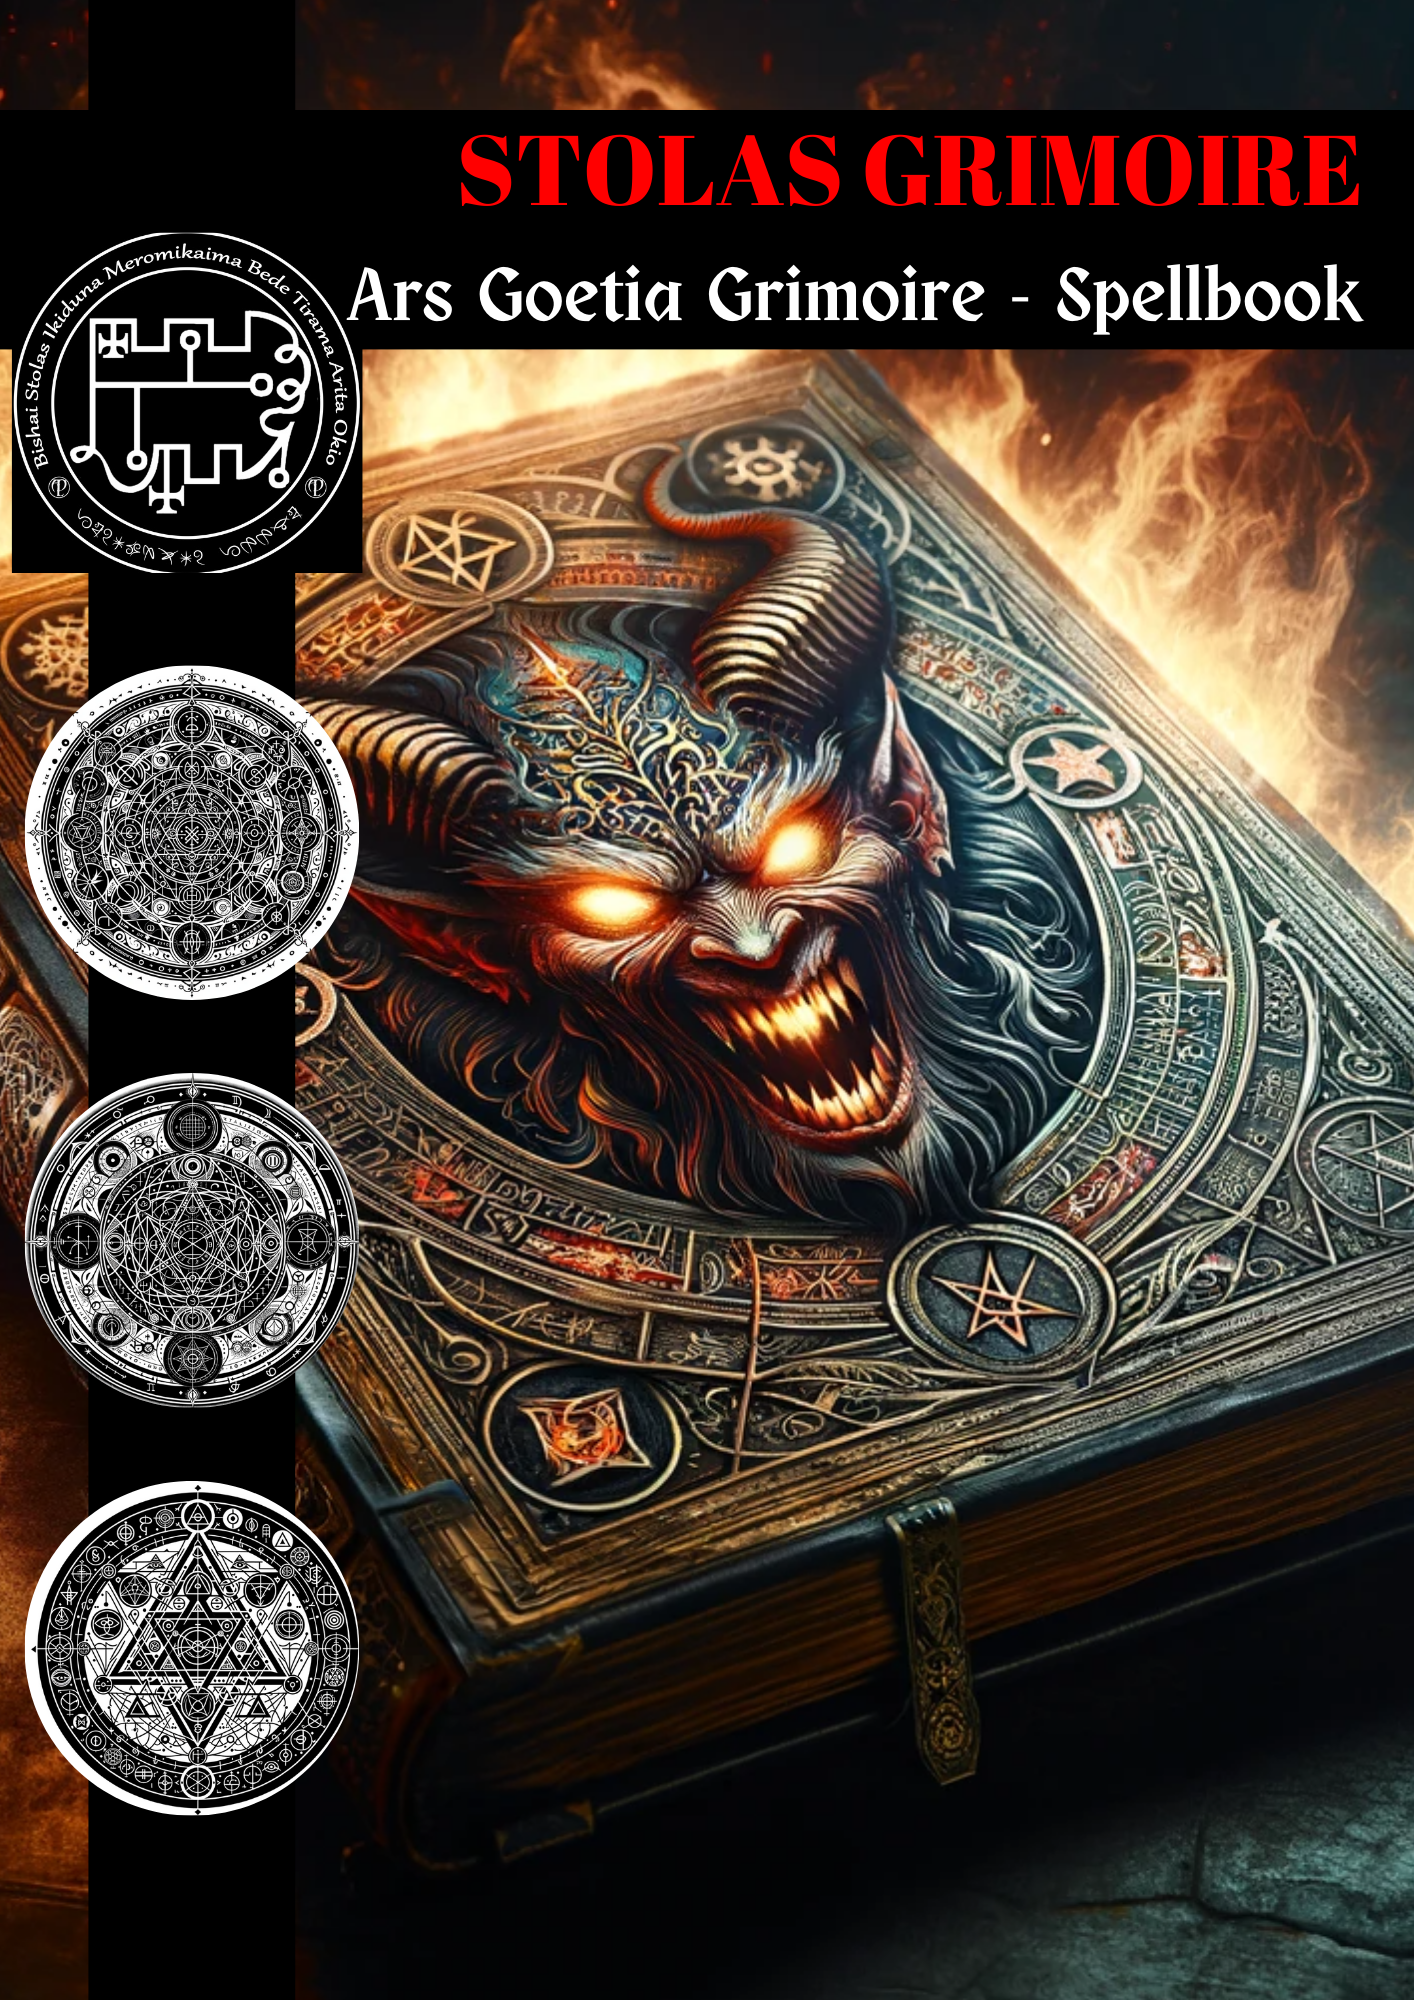 Grimoire of Stolas Phép thuật & Nghi lễ Grimoire dành cho Phù thủy và Thảo dược ma thuật - Abraxas Amulets ® Magic ♾️ Bùa hộ mệnh ♾️ Sáng kiến